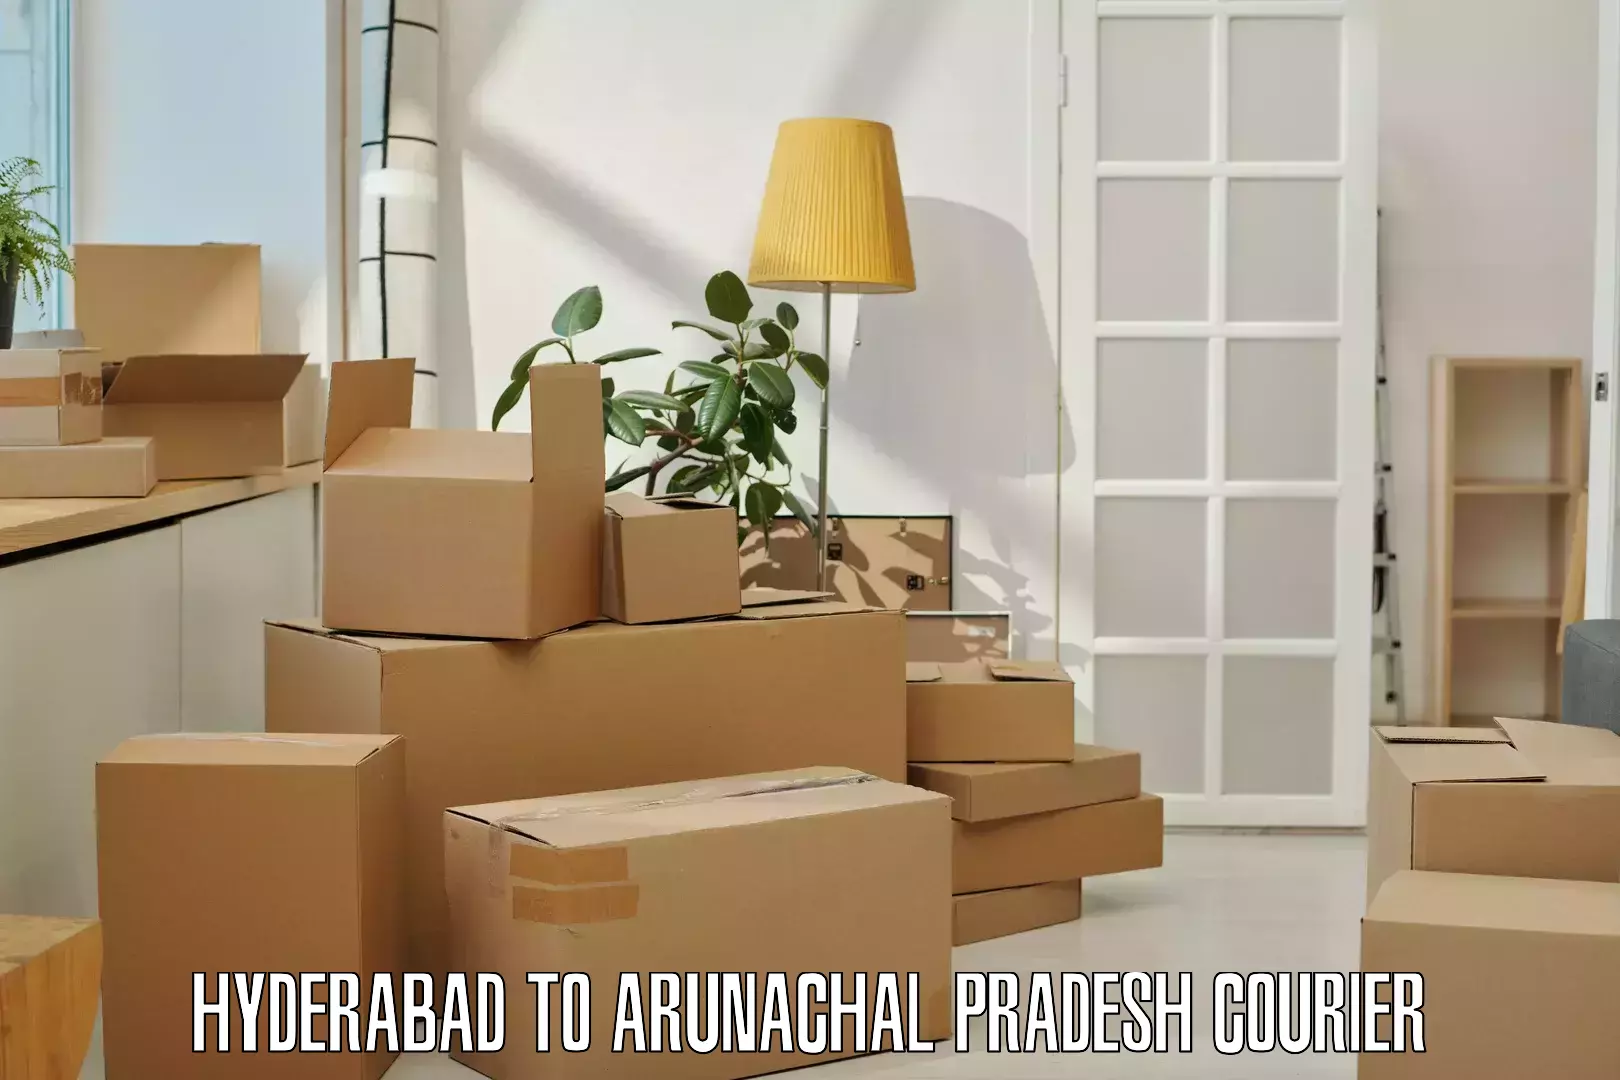 Discount courier rates in Hyderabad to Arunachal Pradesh